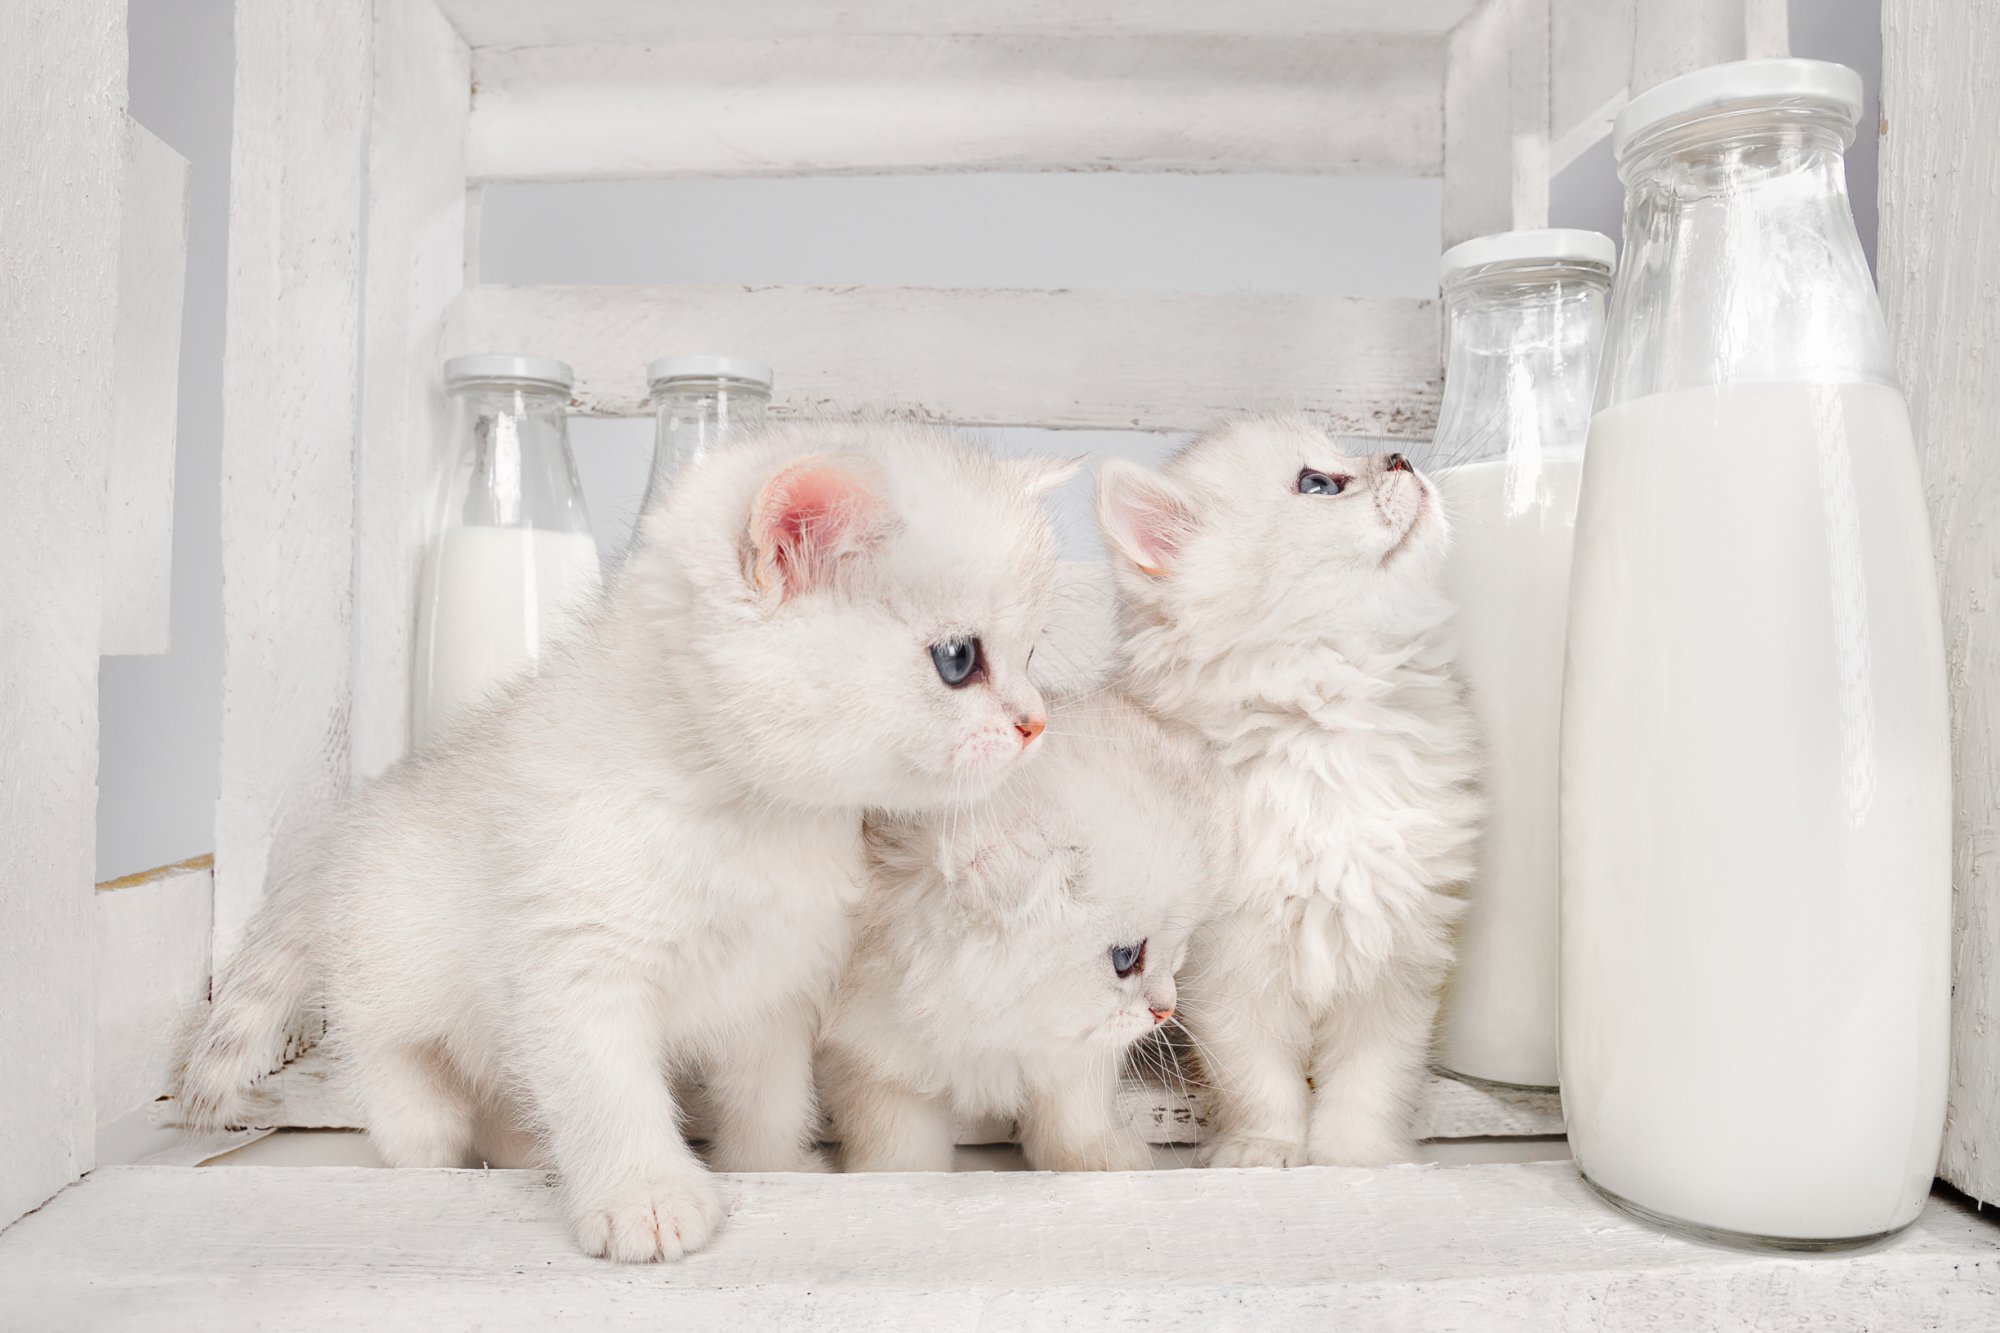 sütlerin yanında oturan üç yavru beyaz kedi